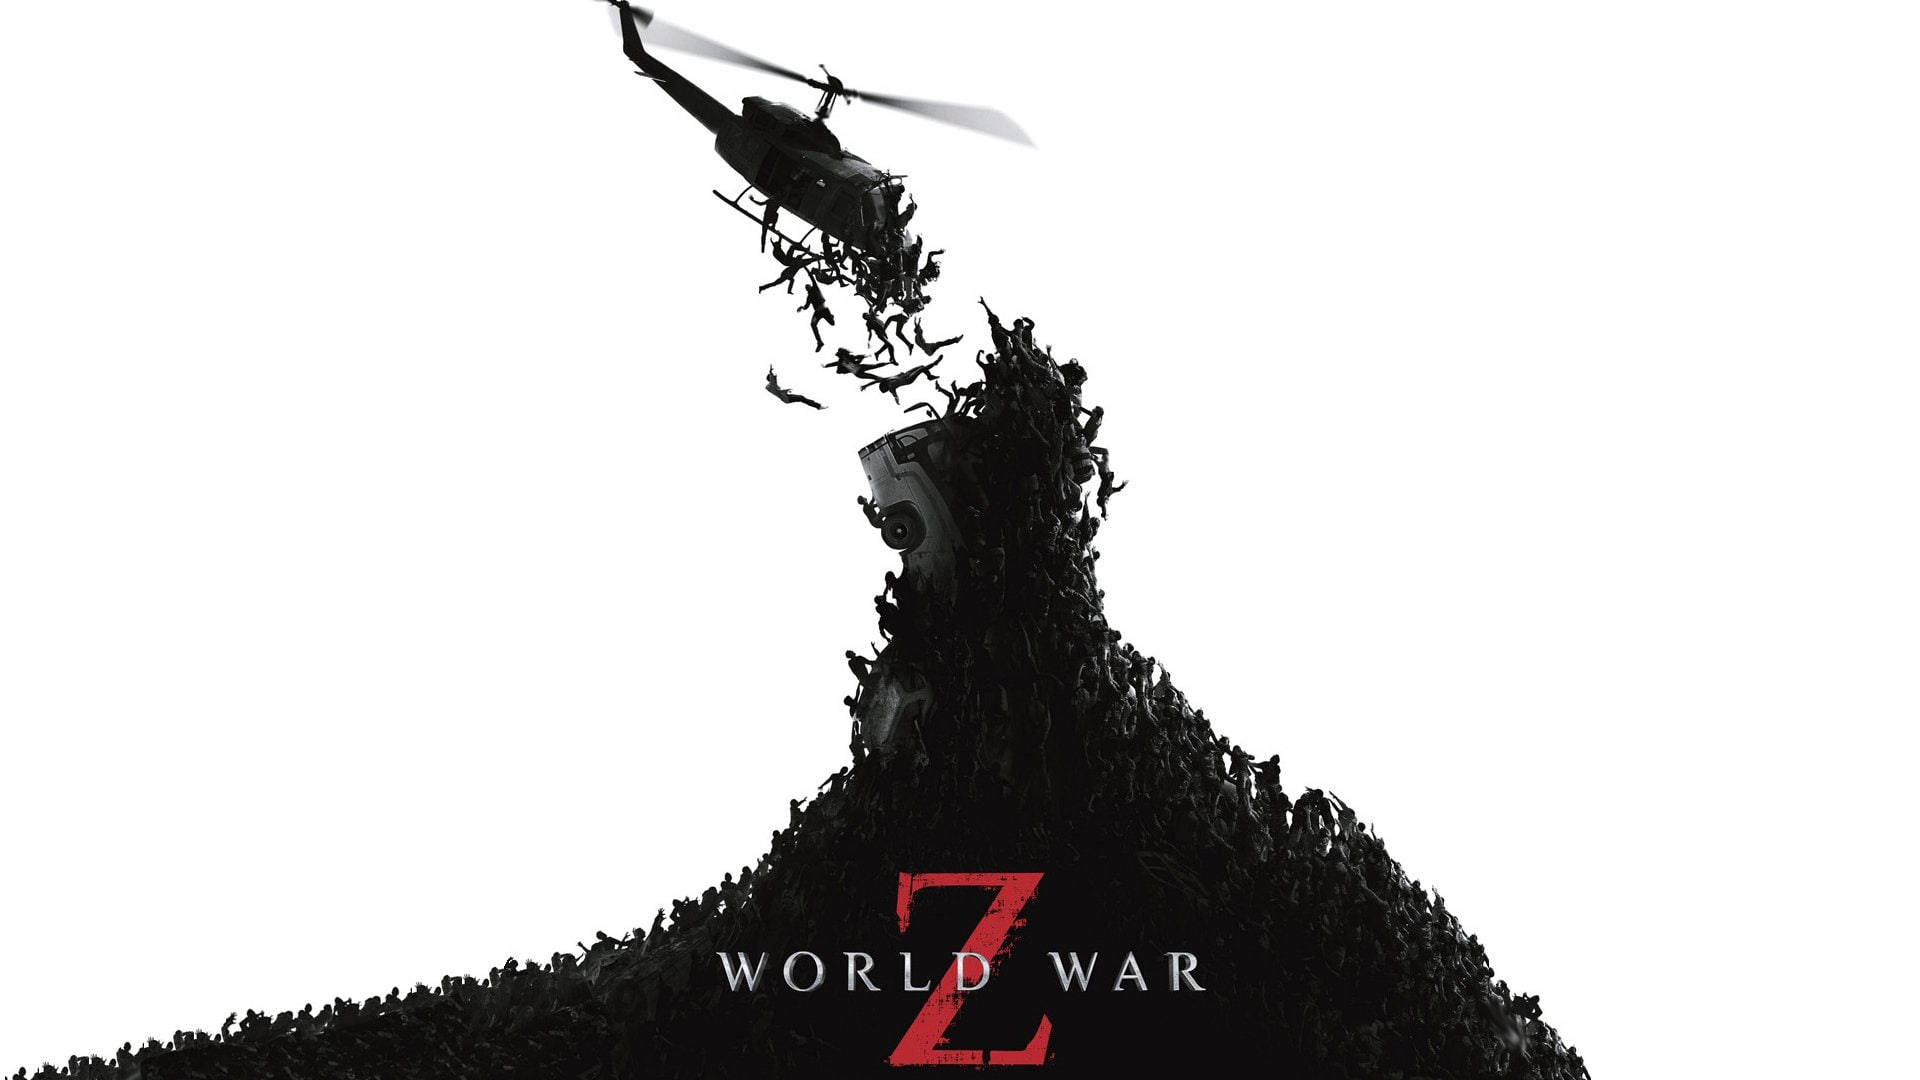 Logotipodel Juego World War Z Fondo de pantalla